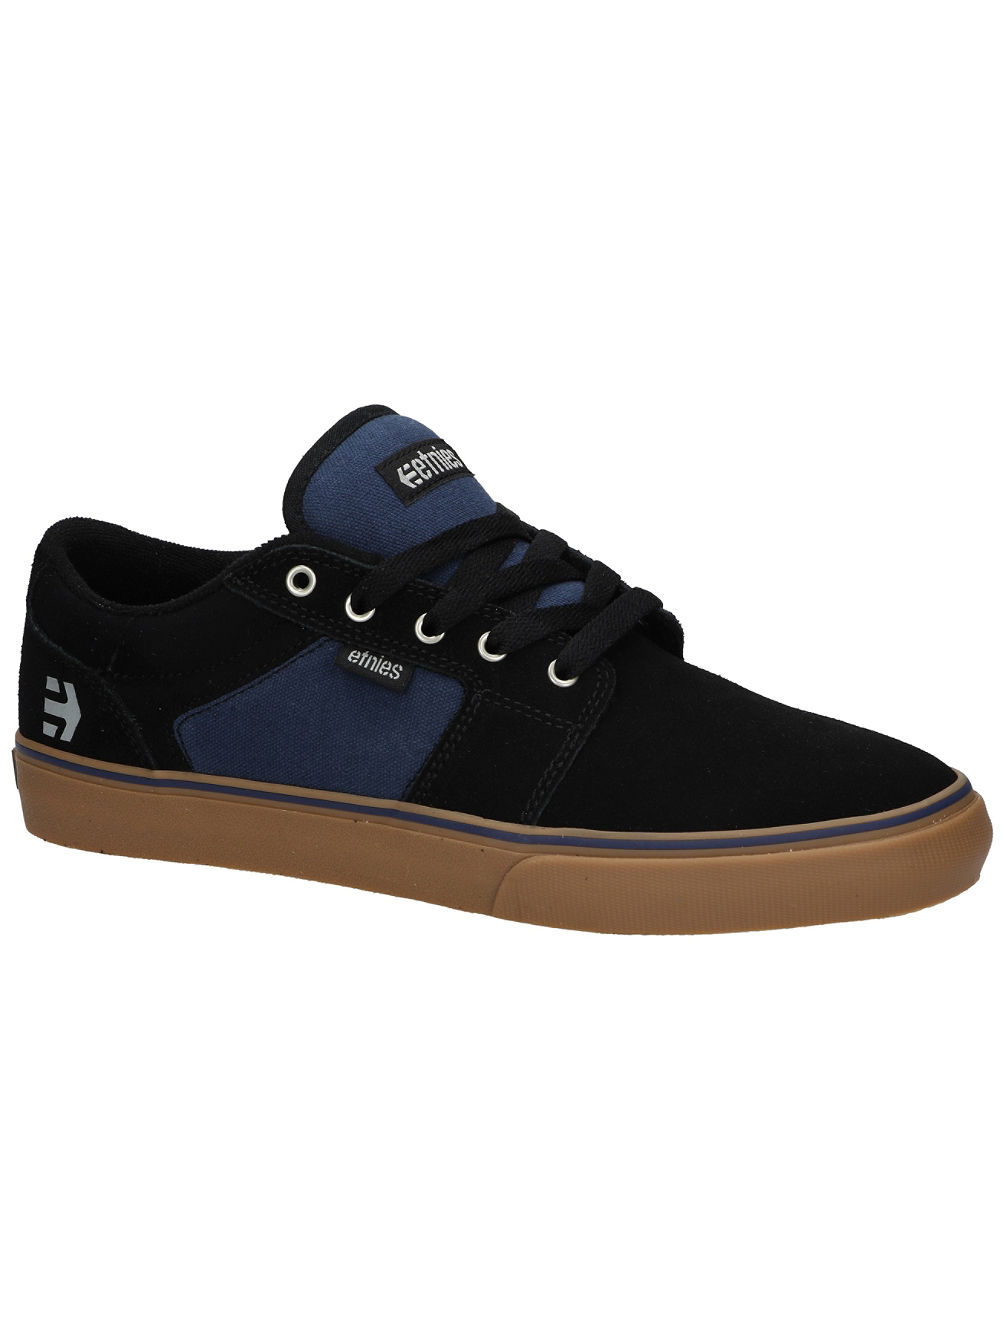 Barge LS Skate Shoes